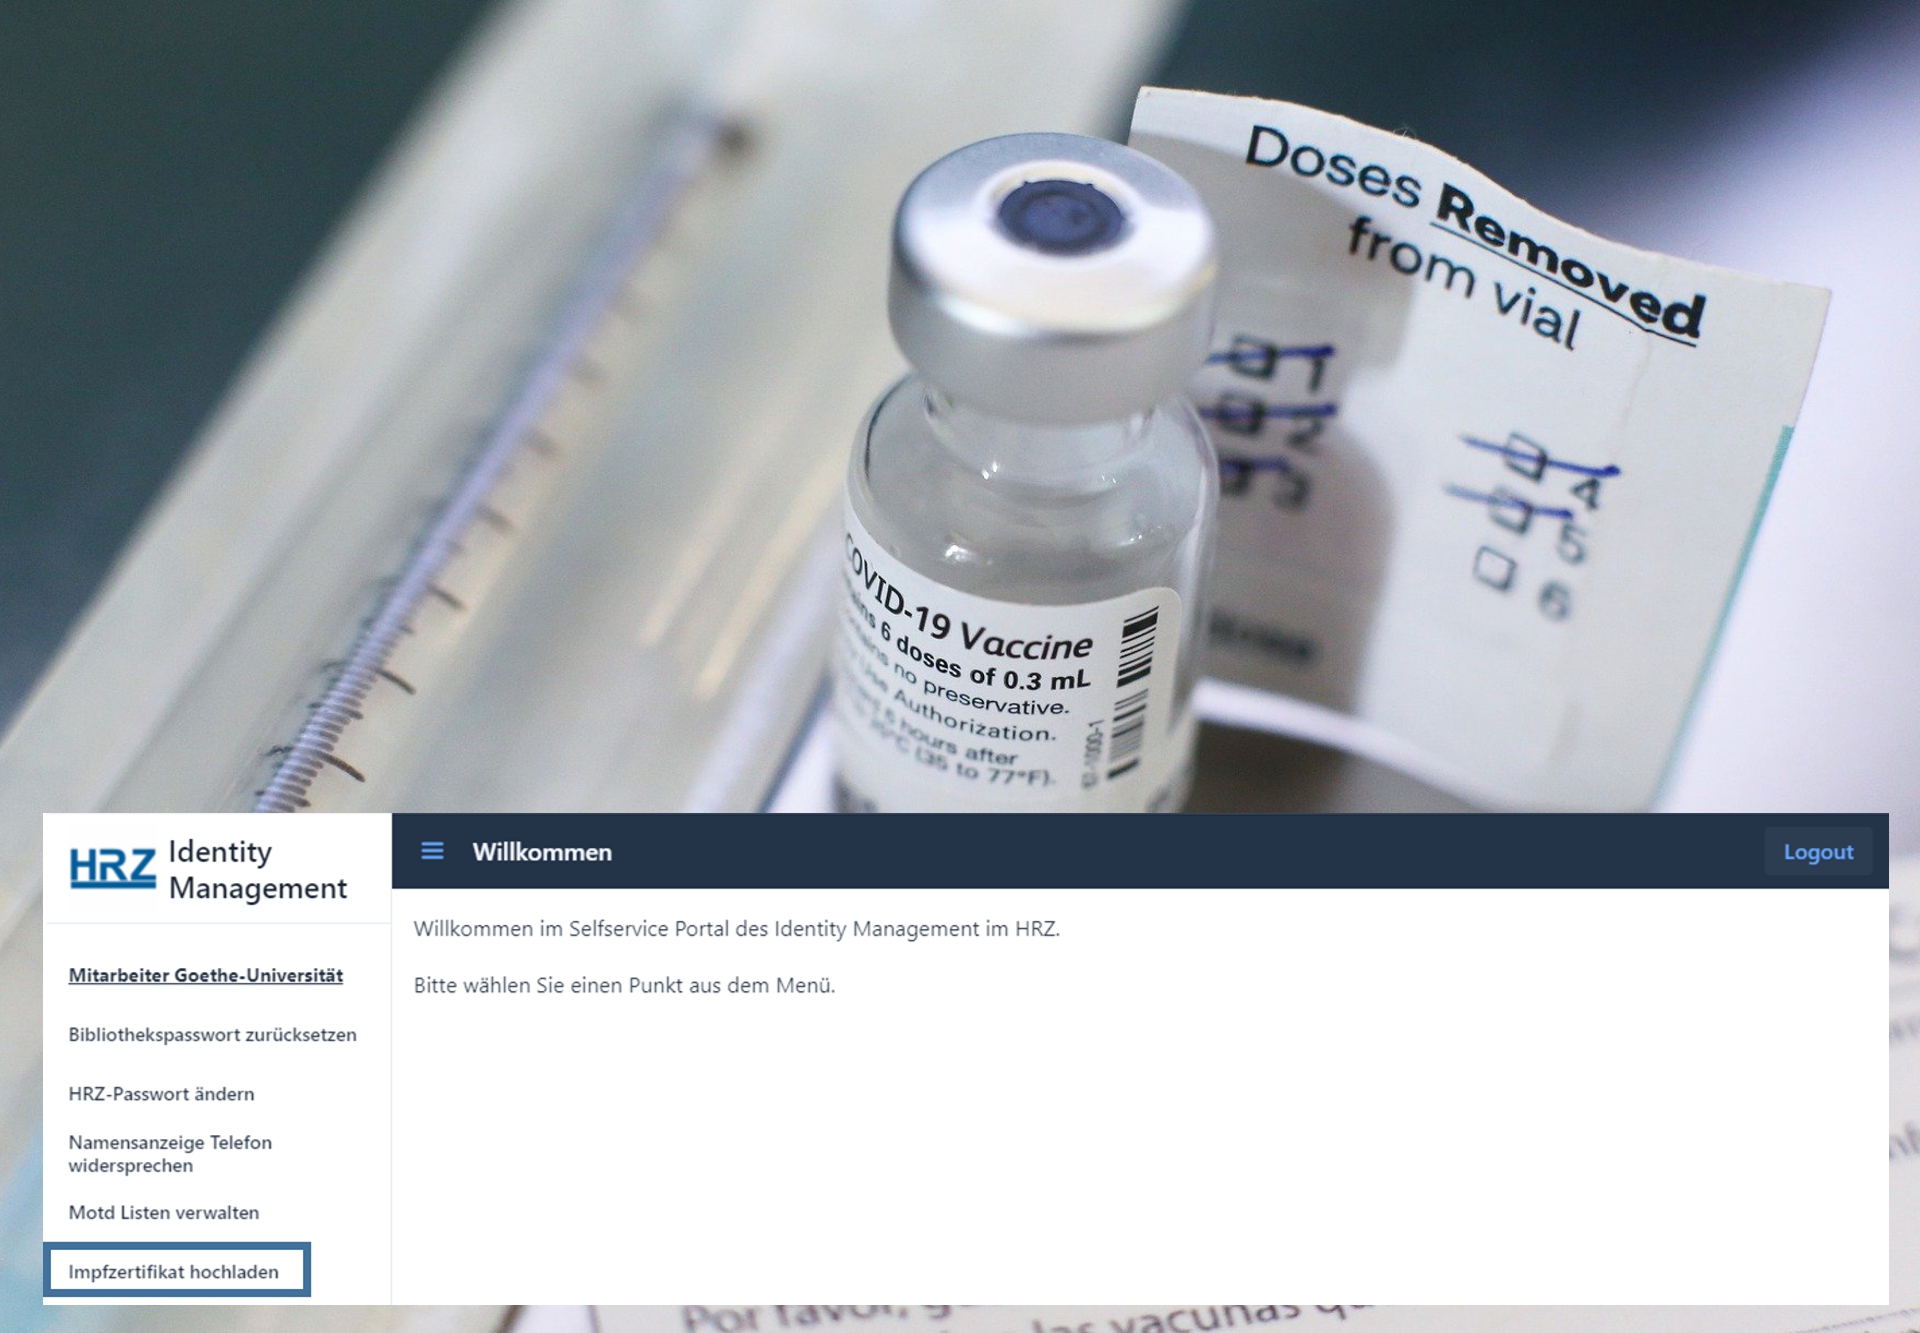 HRZ-Blog 12.2021 Upload Tool digitales Impf- oder genesenen Zertifikat für Mitarbeitende
